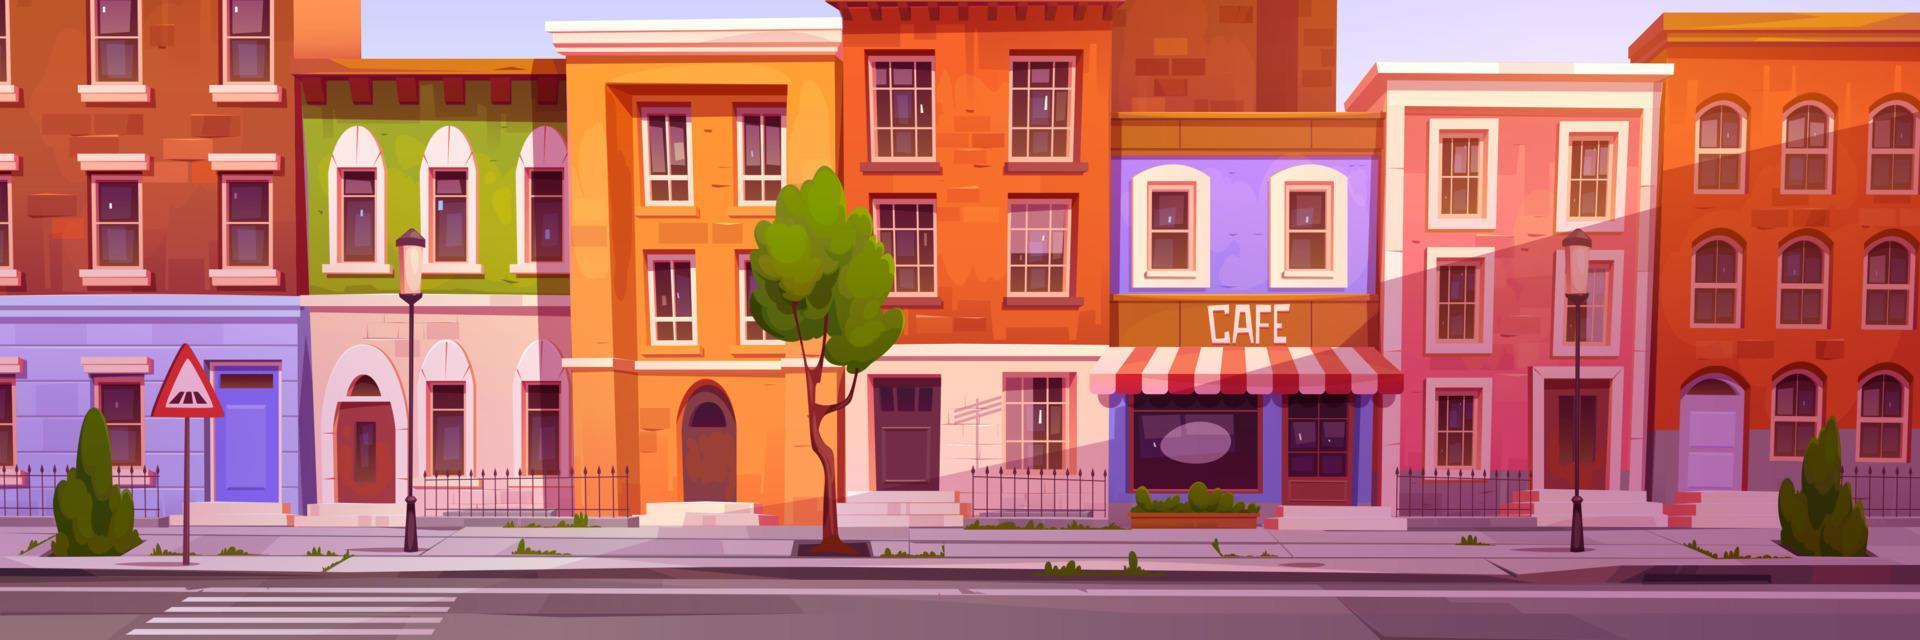 dessin animé ville rue avec agréable Maisons et café vecteur